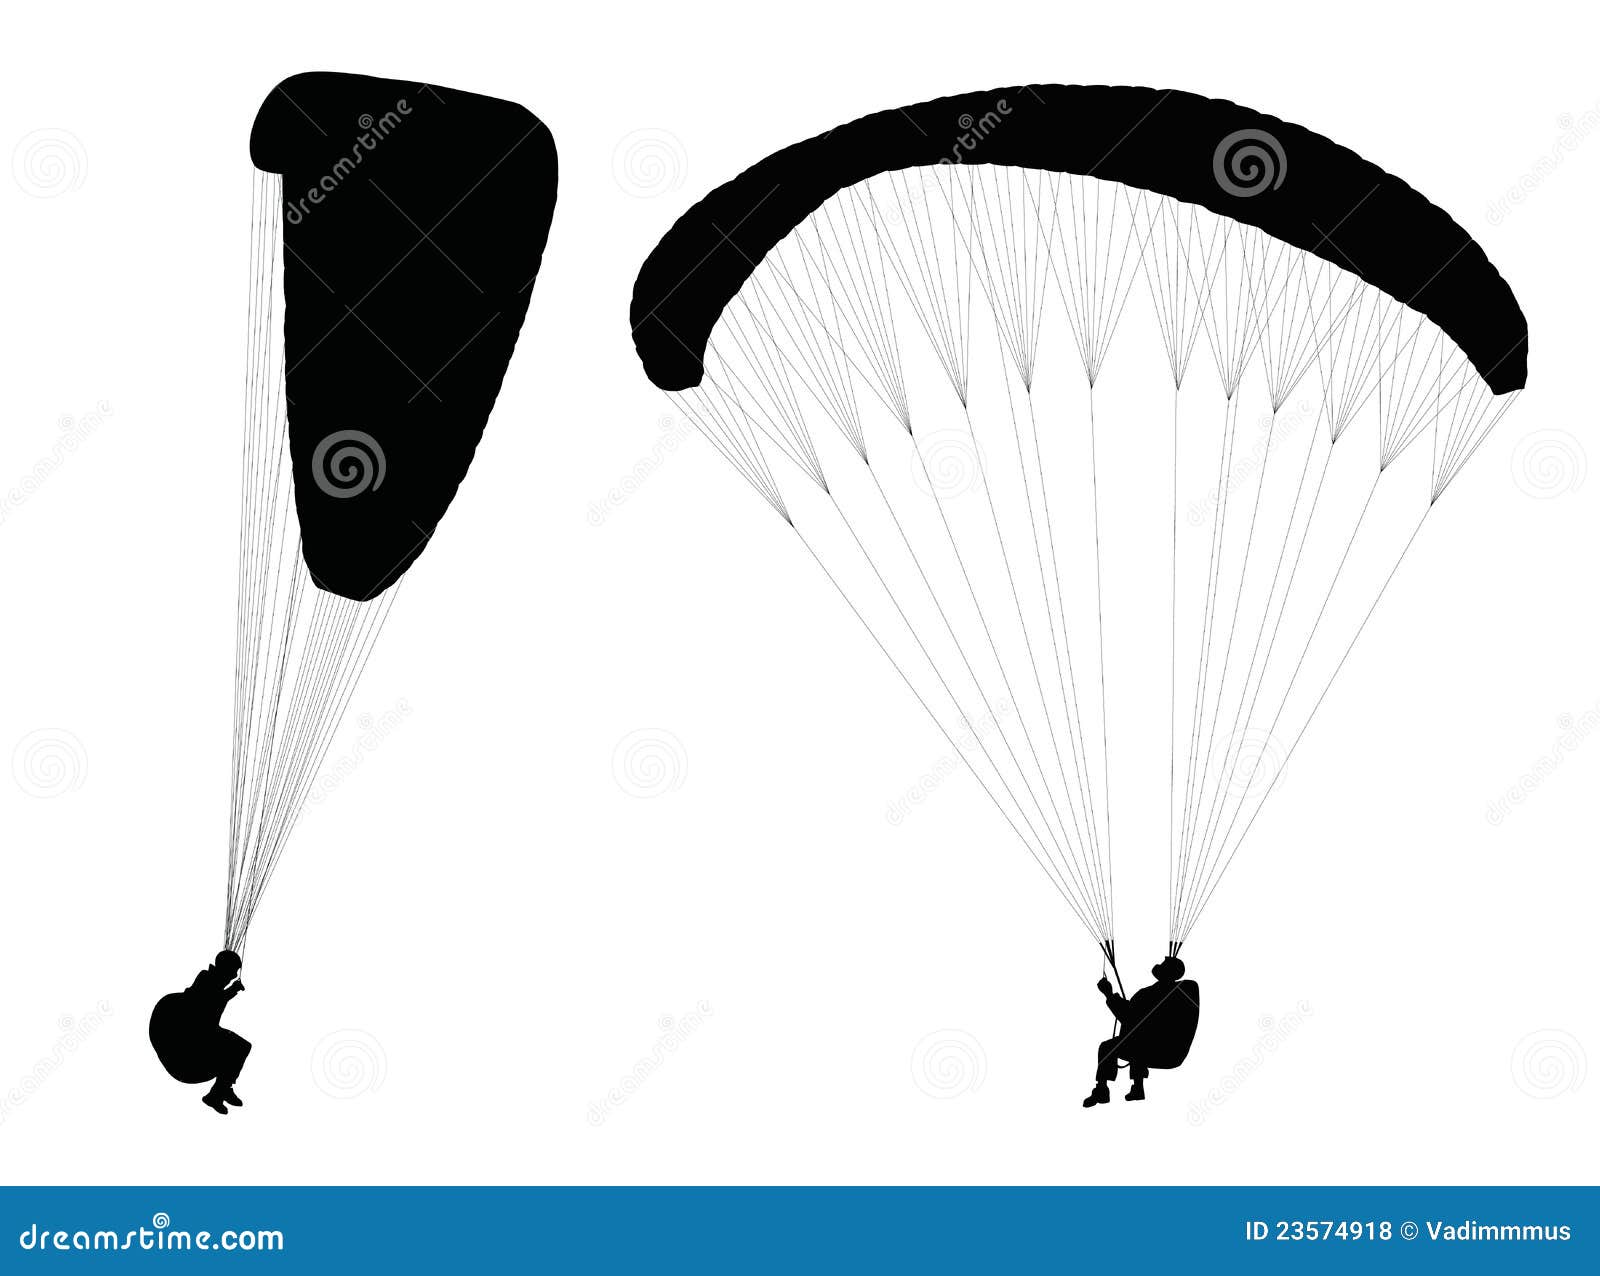 flying paraglider